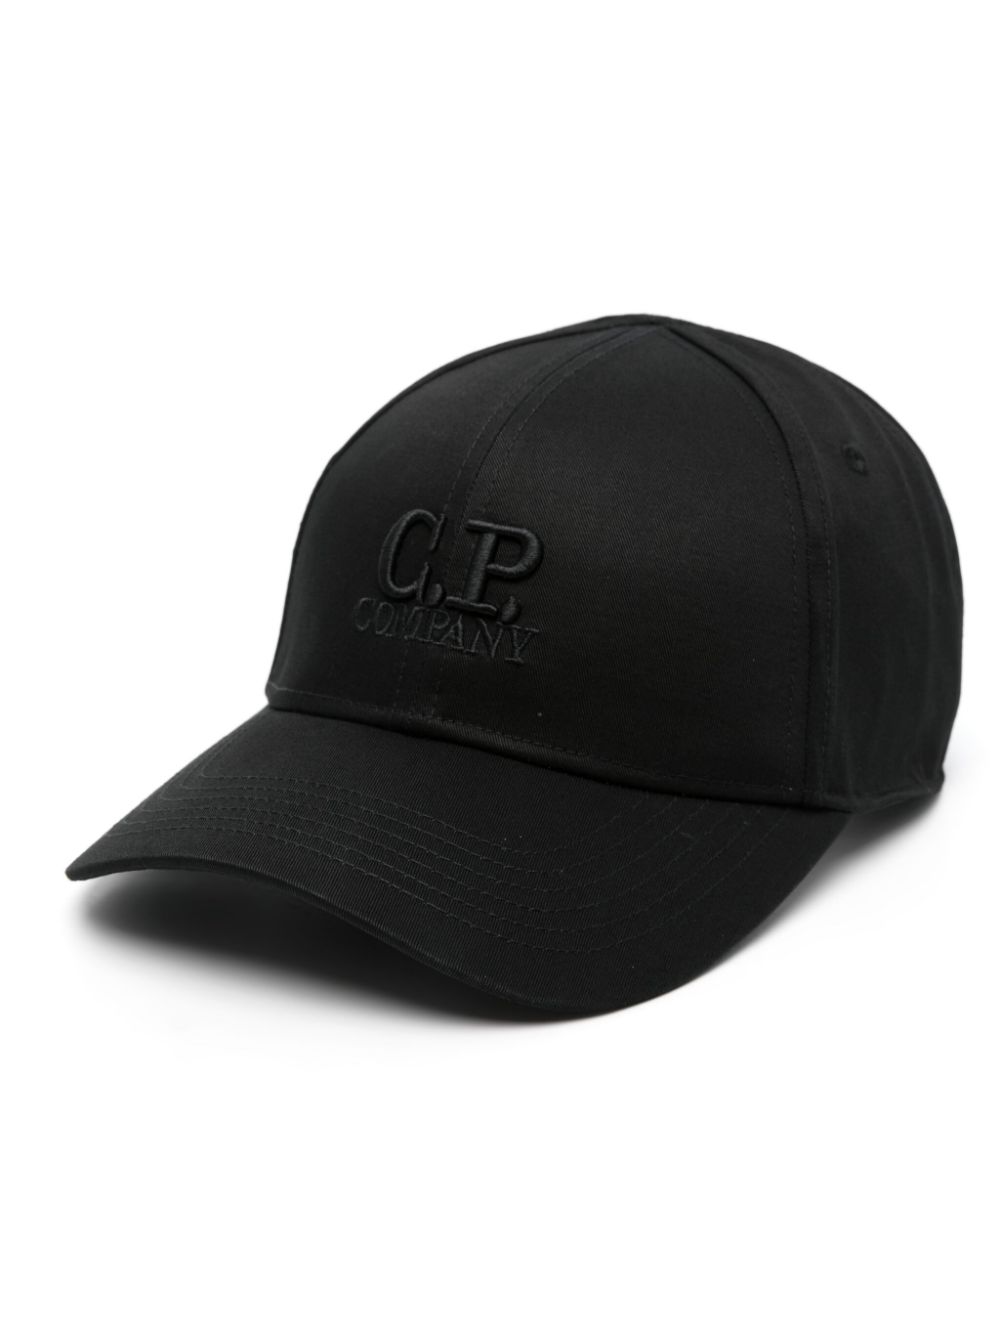 C.P. Company embroidered-logo cotton cap - Black von C.P. Company